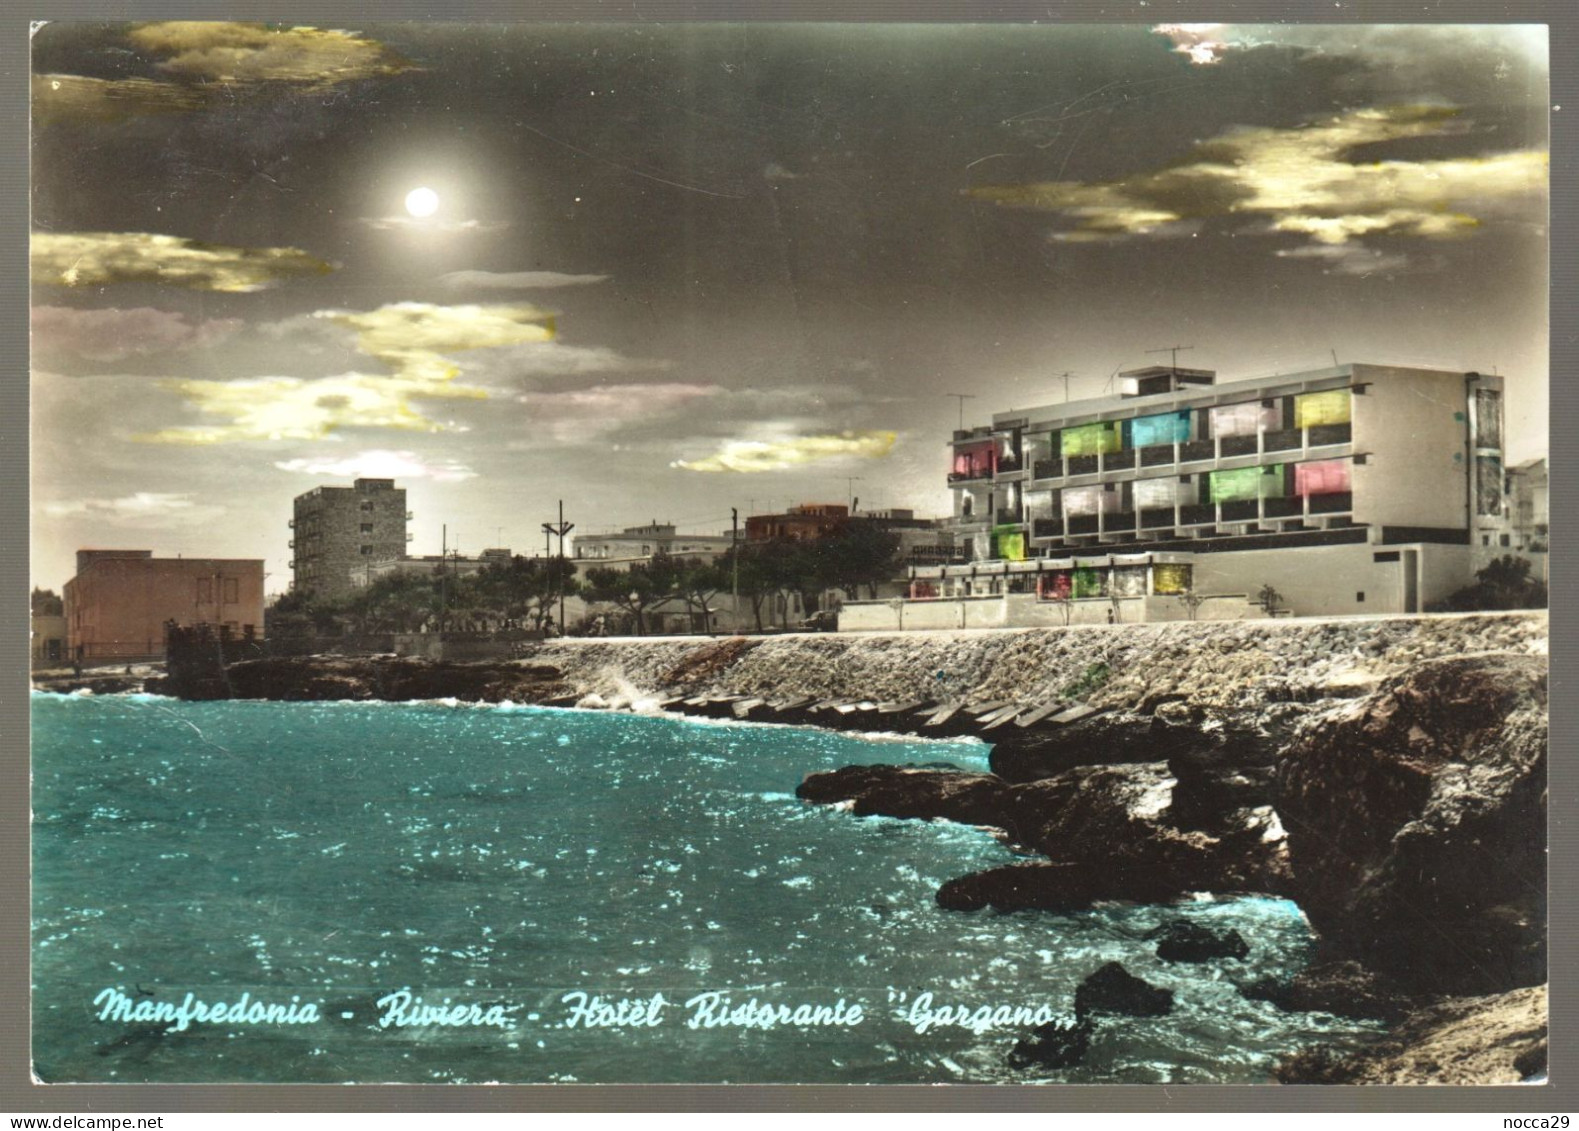 MANFREDONIA - 1963 - RIVIERA - HOTEL RISTORANTE GARGANO - Manfredonia